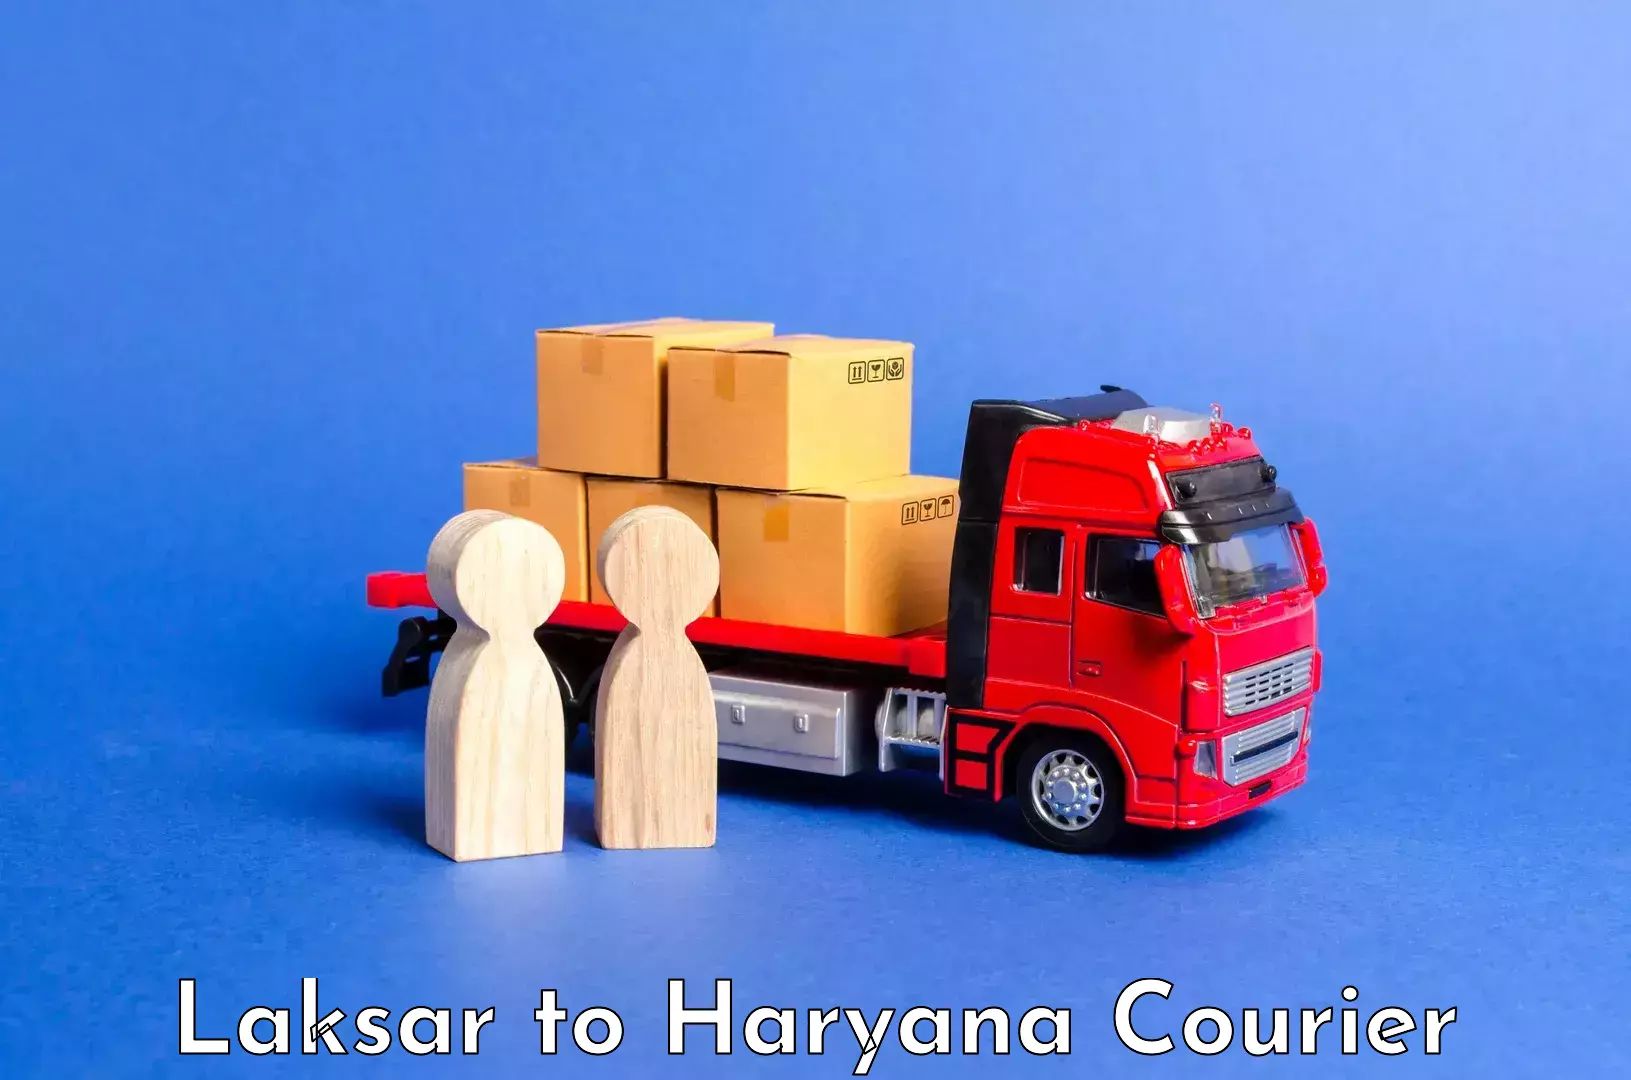 Luggage transit service Laksar to Haryana